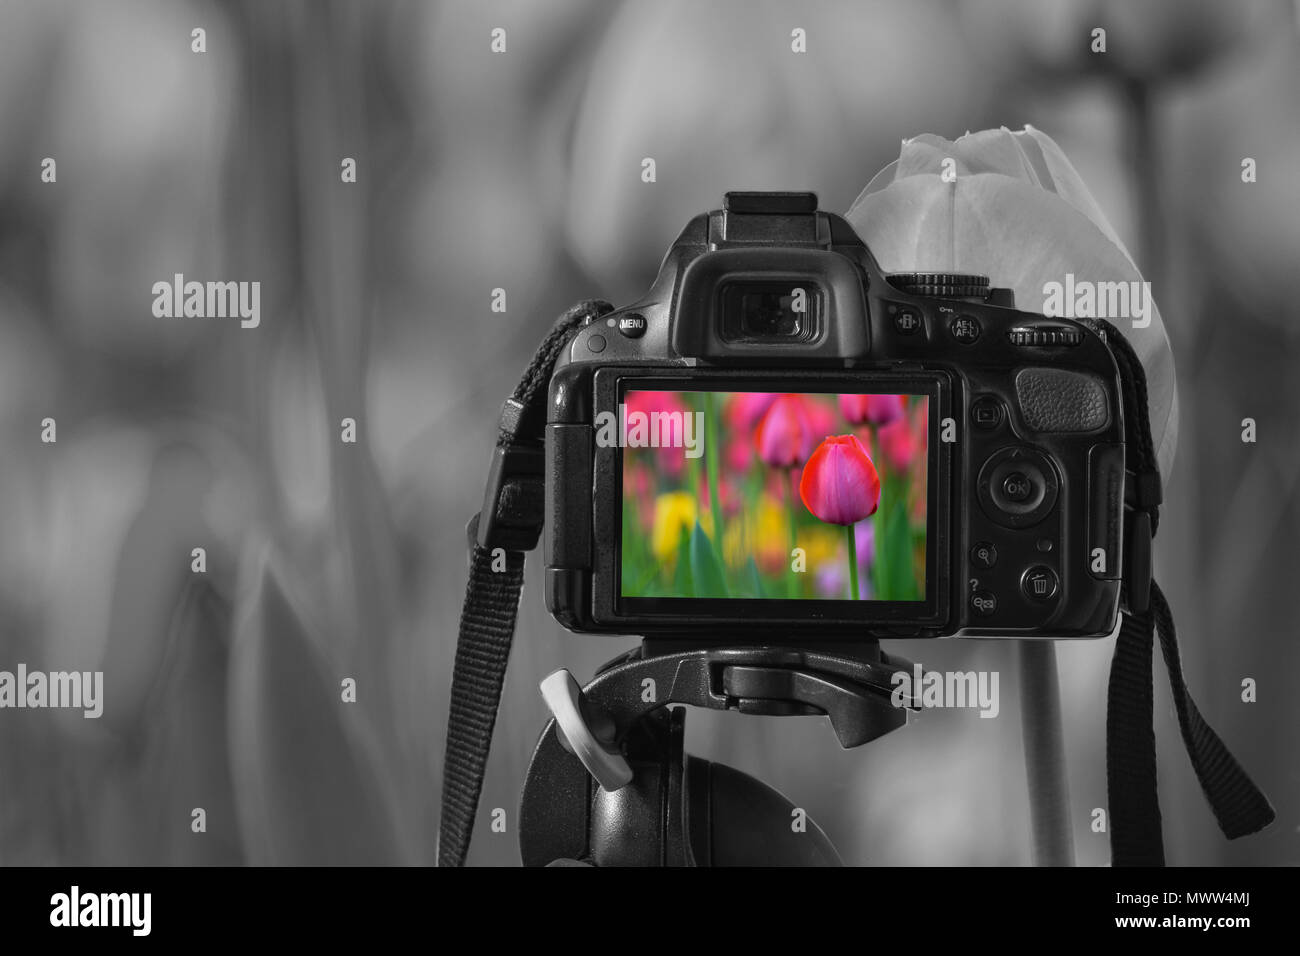 In prossimità di una fotocamera digitale con un'immagine di coloratissimi tulipani sul live view, in bianco e nero i tulipani in background Foto Stock